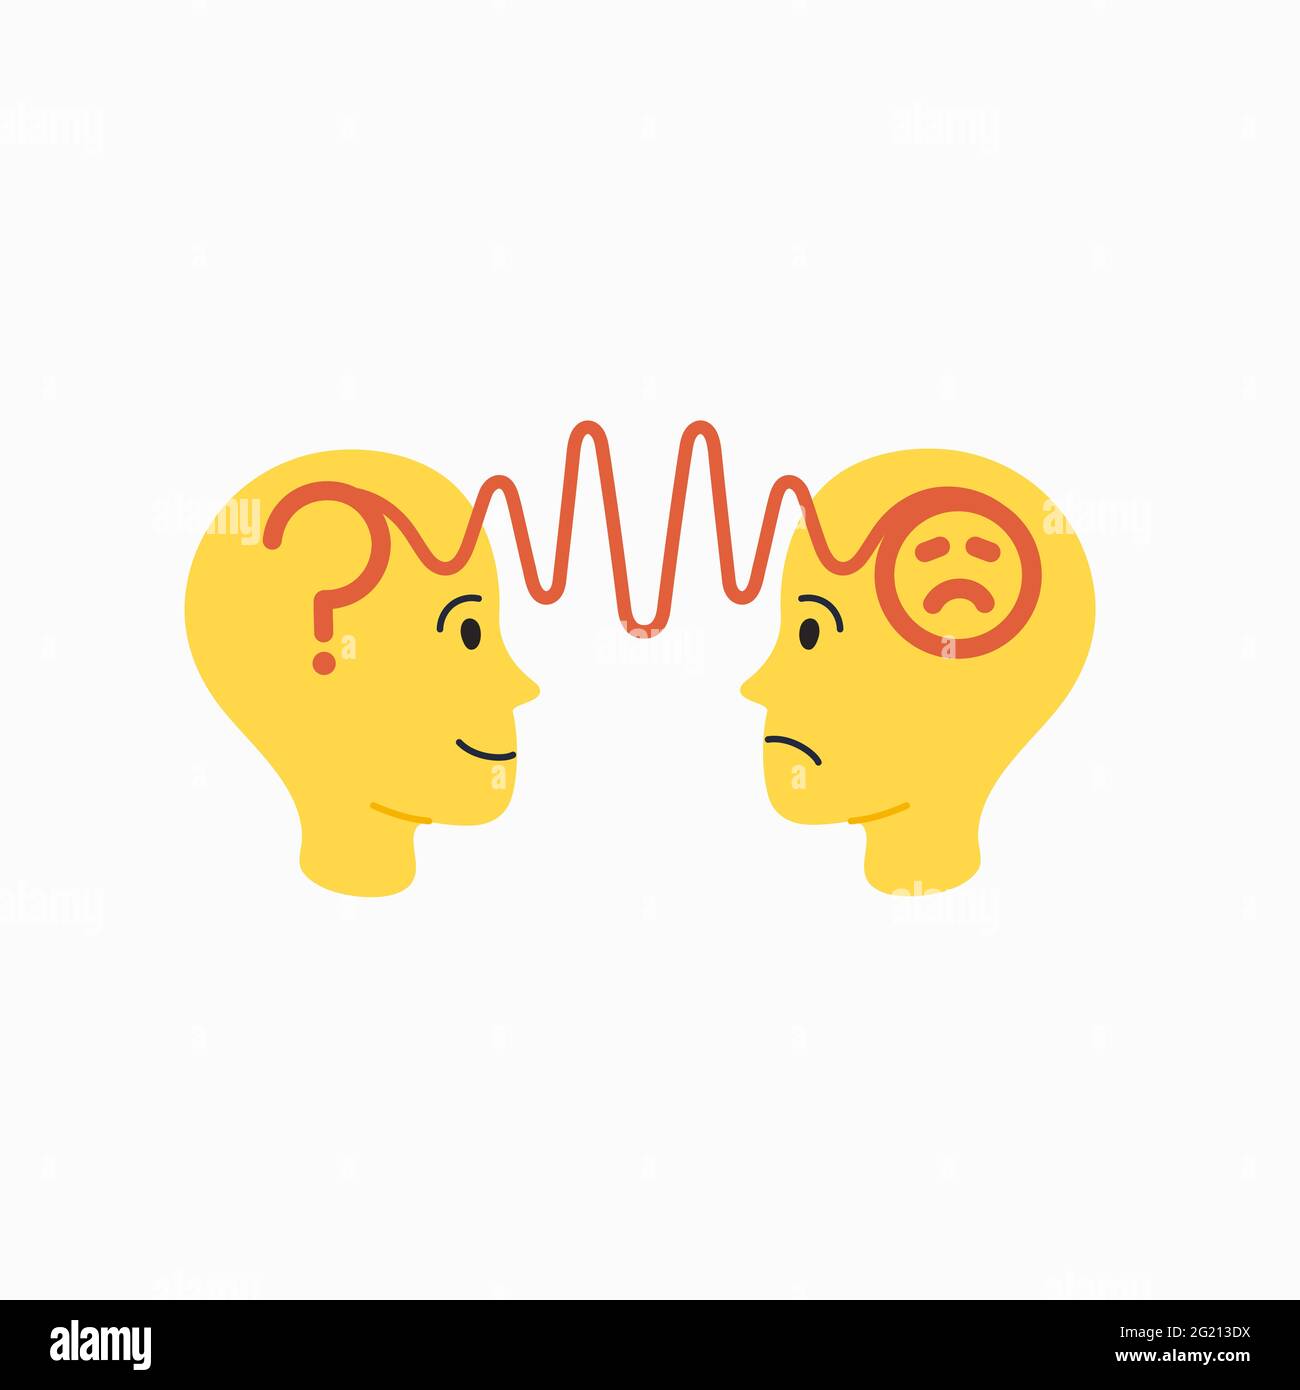 Empatía. Concepto de empatía - siluetas de dos cabezas humanas con una  imagen abstracta de las emociones en el interior. Ilustración vectorial en  estilo de dibujo animado plano sobre el blanco Imagen